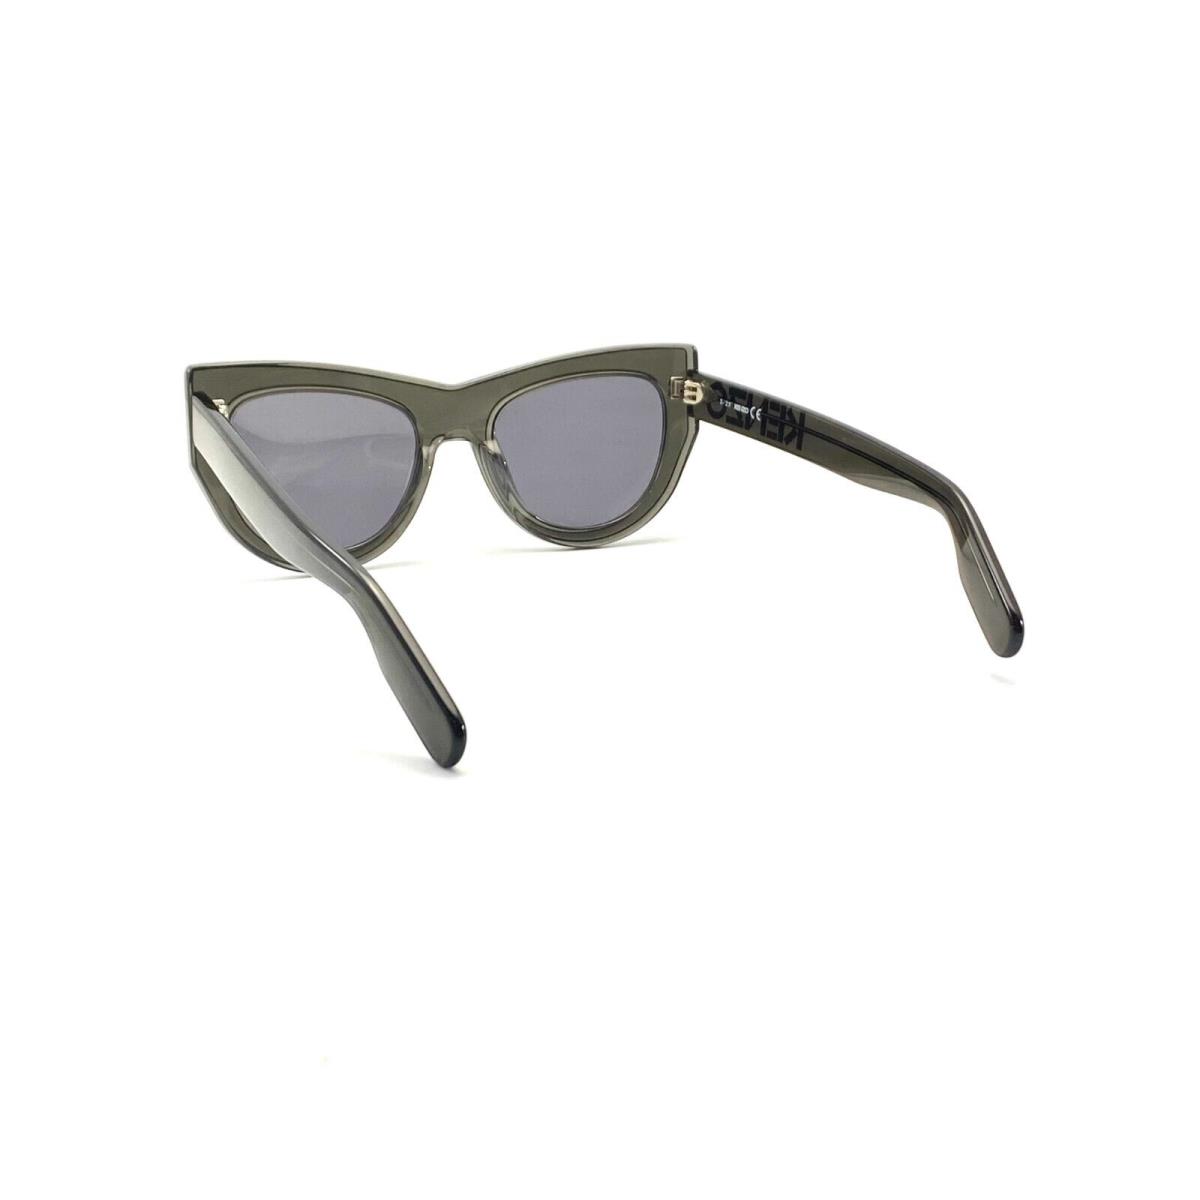 Kenzo sunglasses  - Gray Frame, Gray Lens